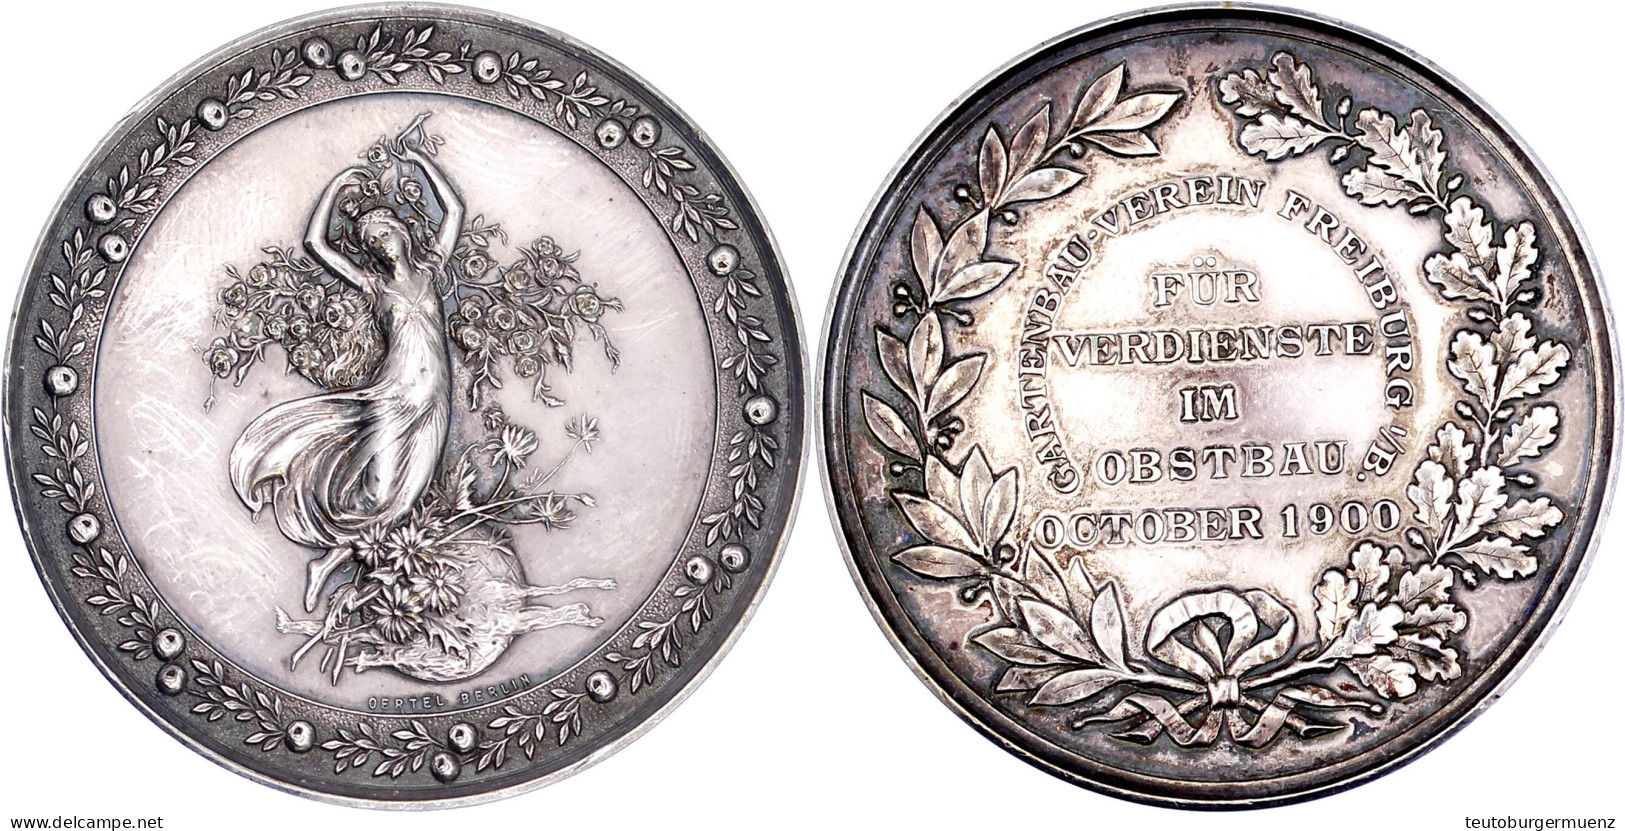 Silbermedaille Des Gartenbau-Vereins Freiburg I.B. 1900, Für Verdienste Im Obstbau Oktober 1900. Fortuna Auf Blumenkorb, - Goldmünzen